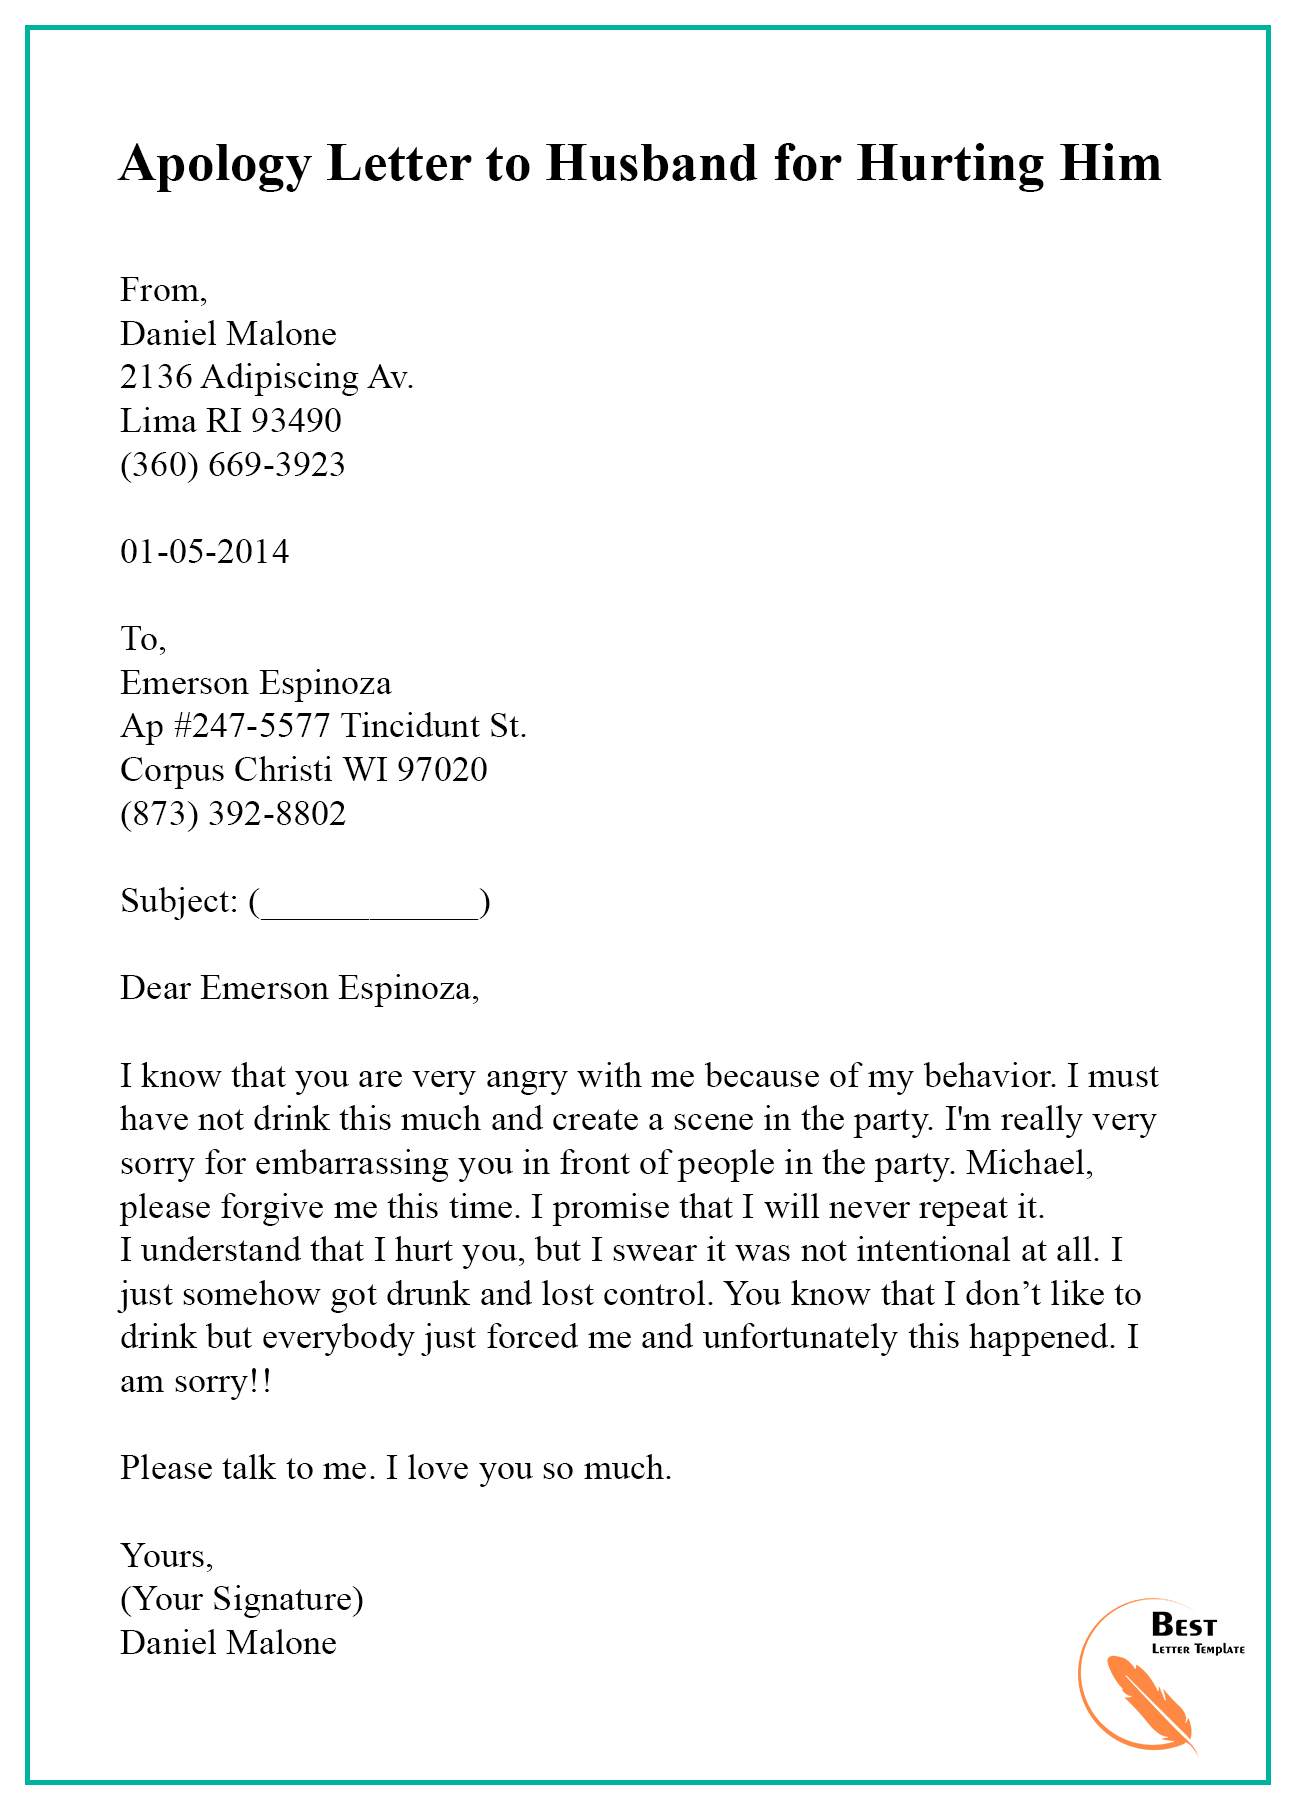 application letter for job after husband death